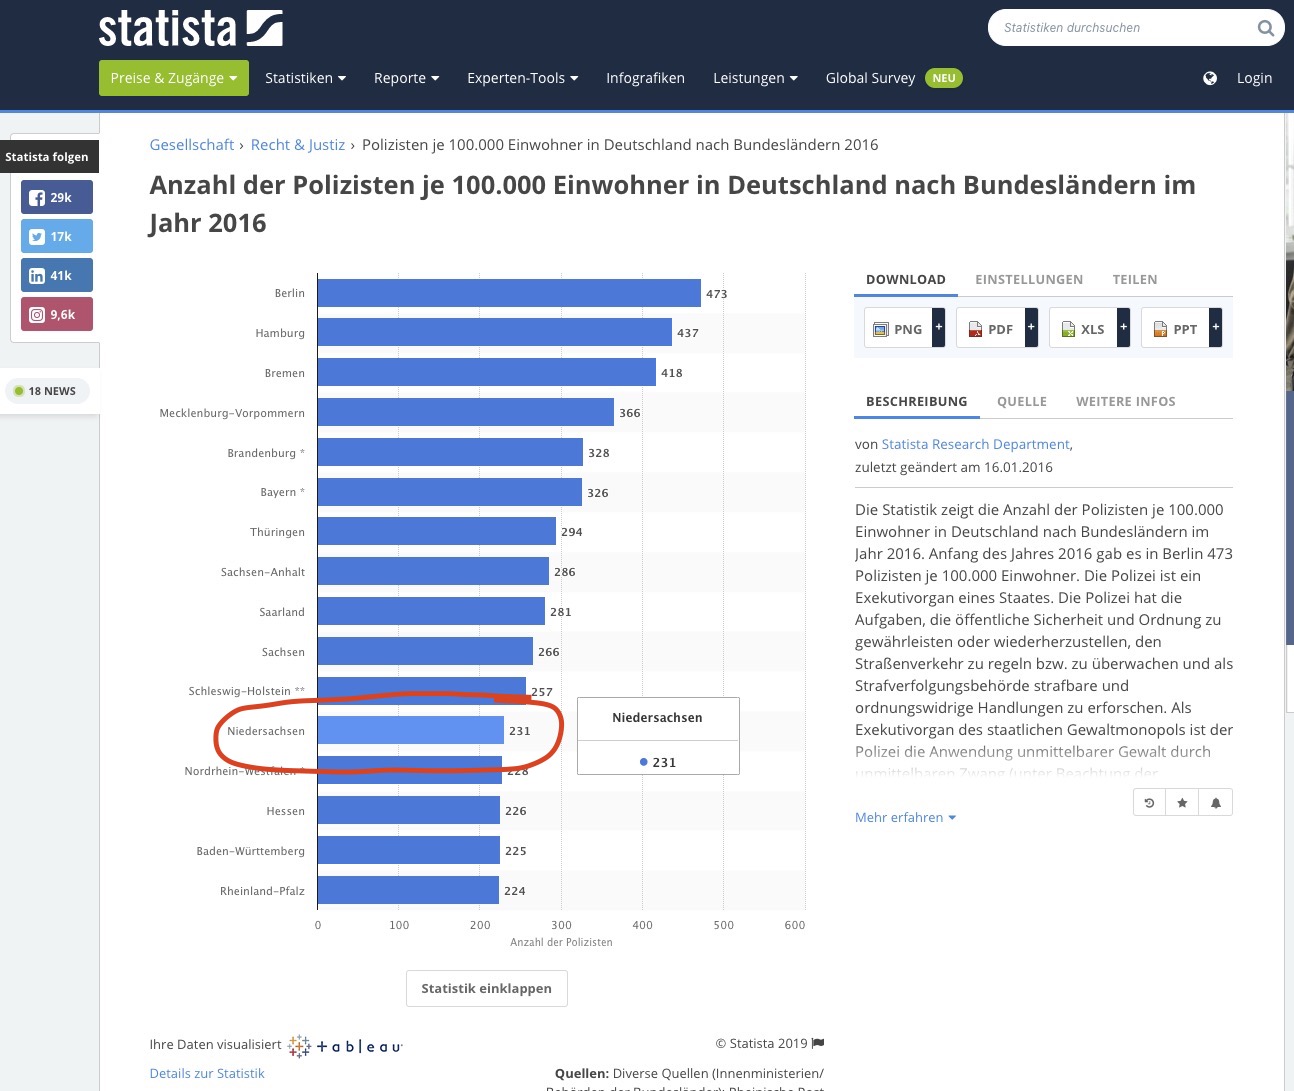 Quelle: https://de.statista.com/statistik/daten/studie/516175/umfrage/polizisten-je-100000-einwohner-in-deutschland-nach-bundeslaendern/